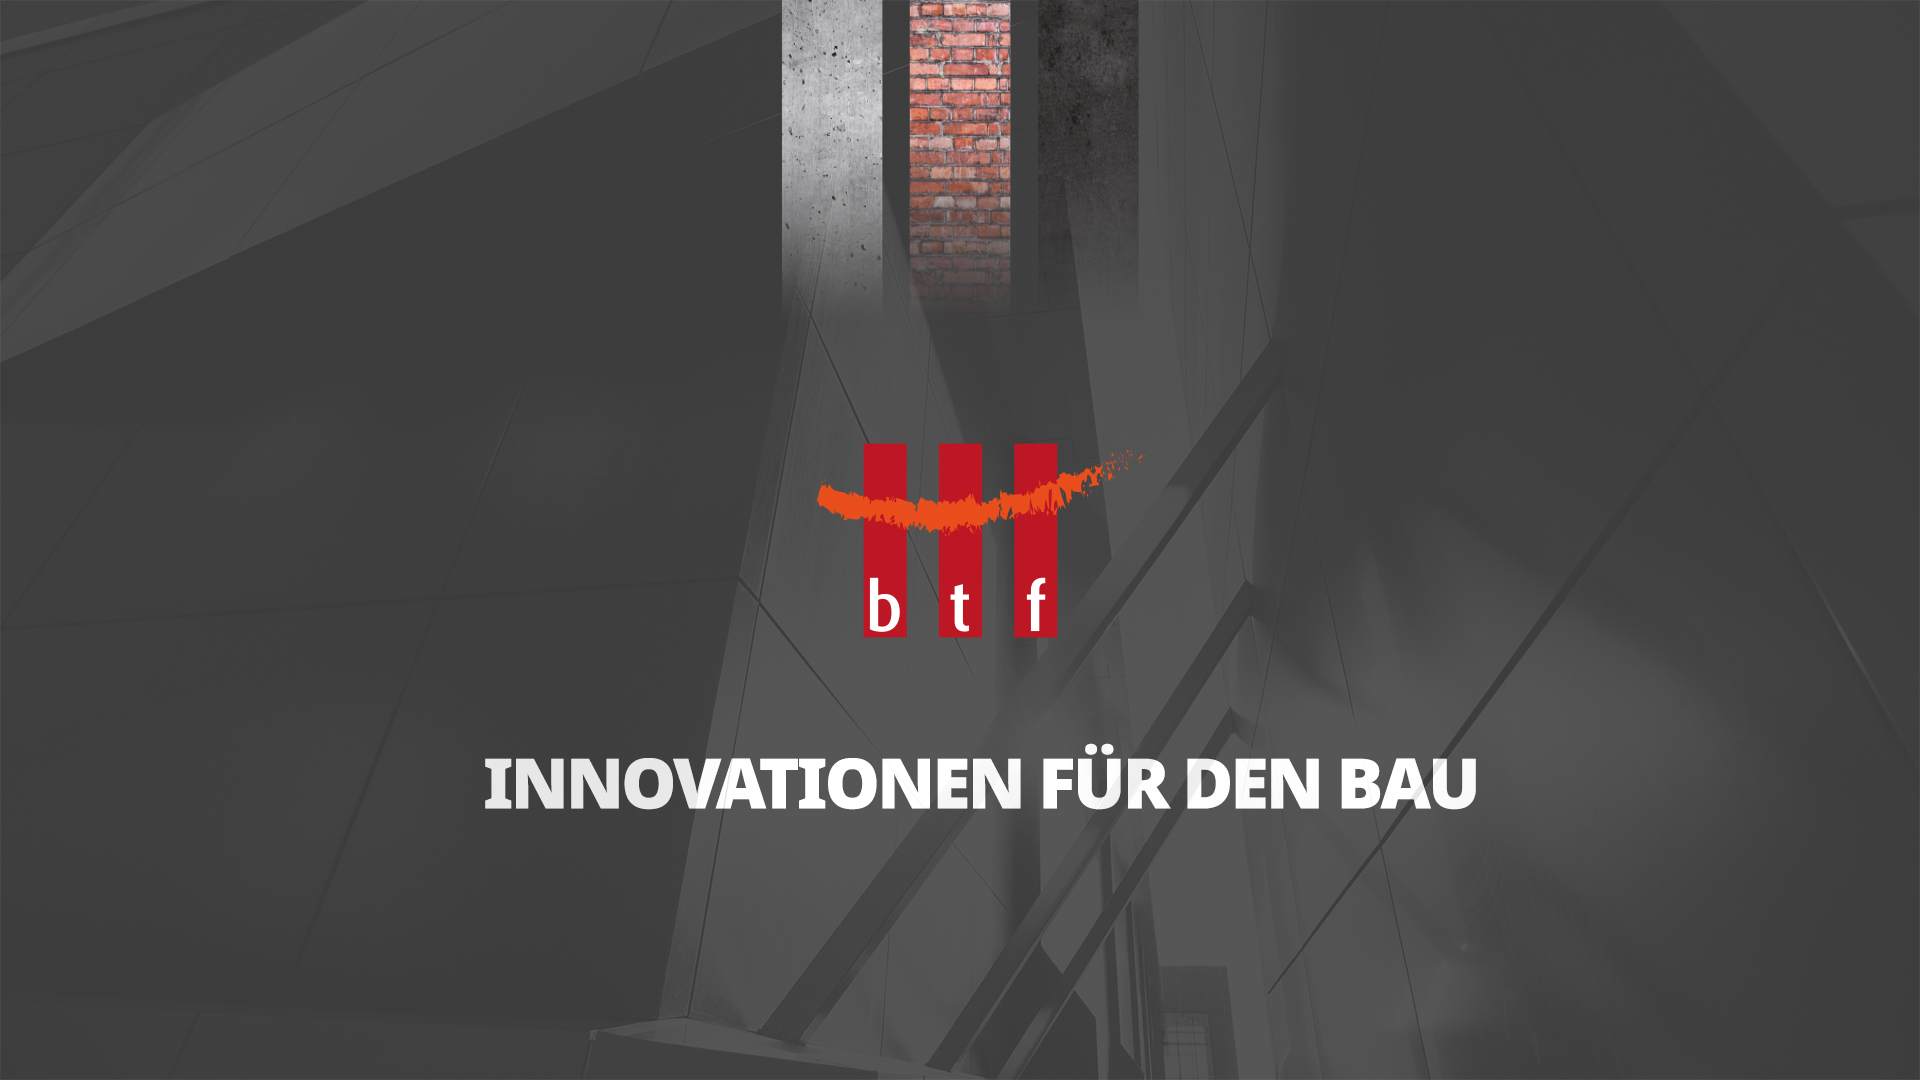 btf Innovationen für den Bau GmbH header